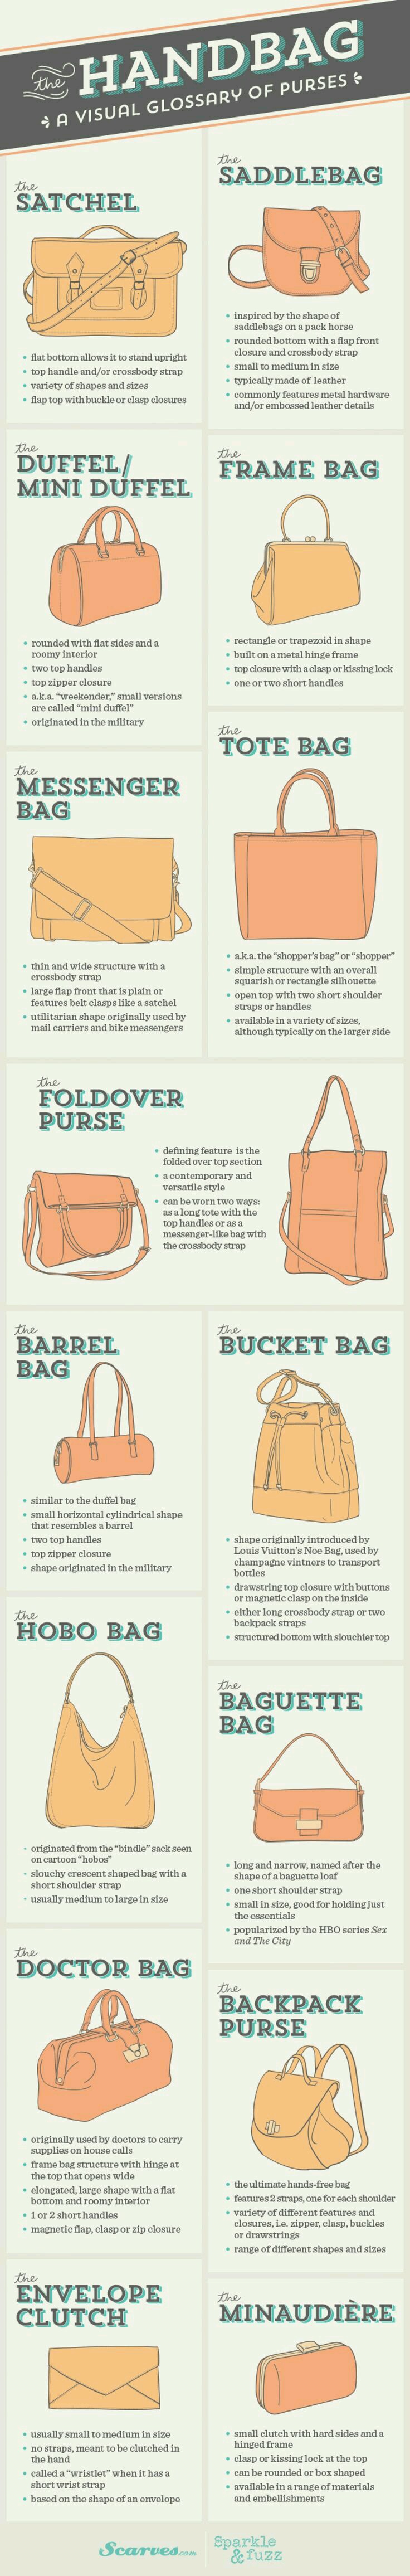 Popular Handbag Styles